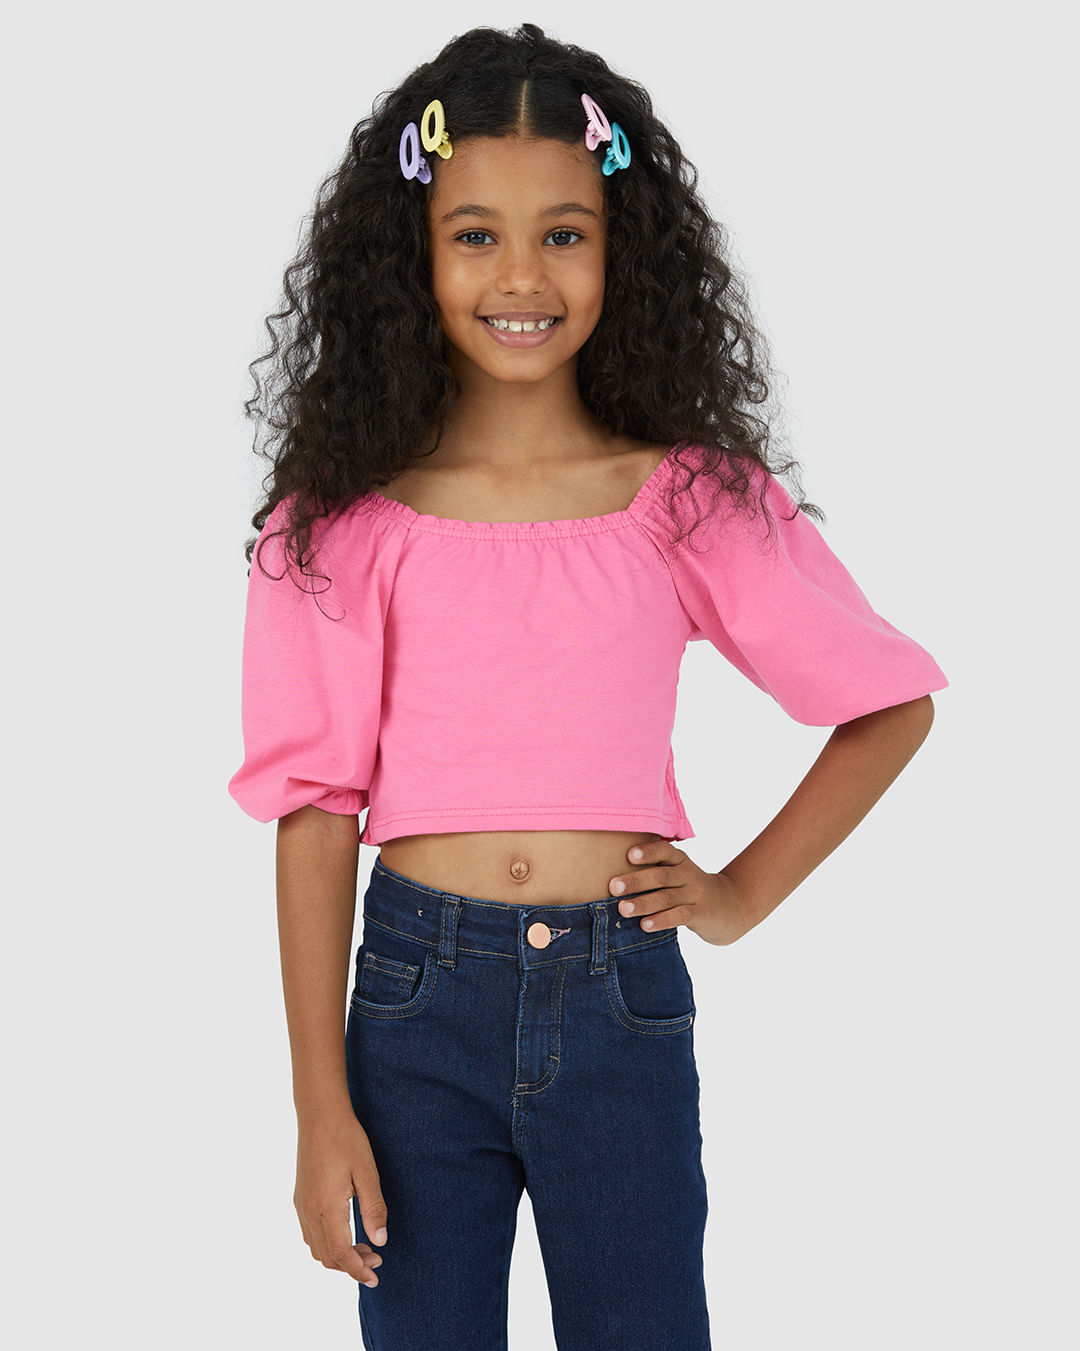 Blusas Infantil Moda Menina com Preços Incríveis no Shoptime